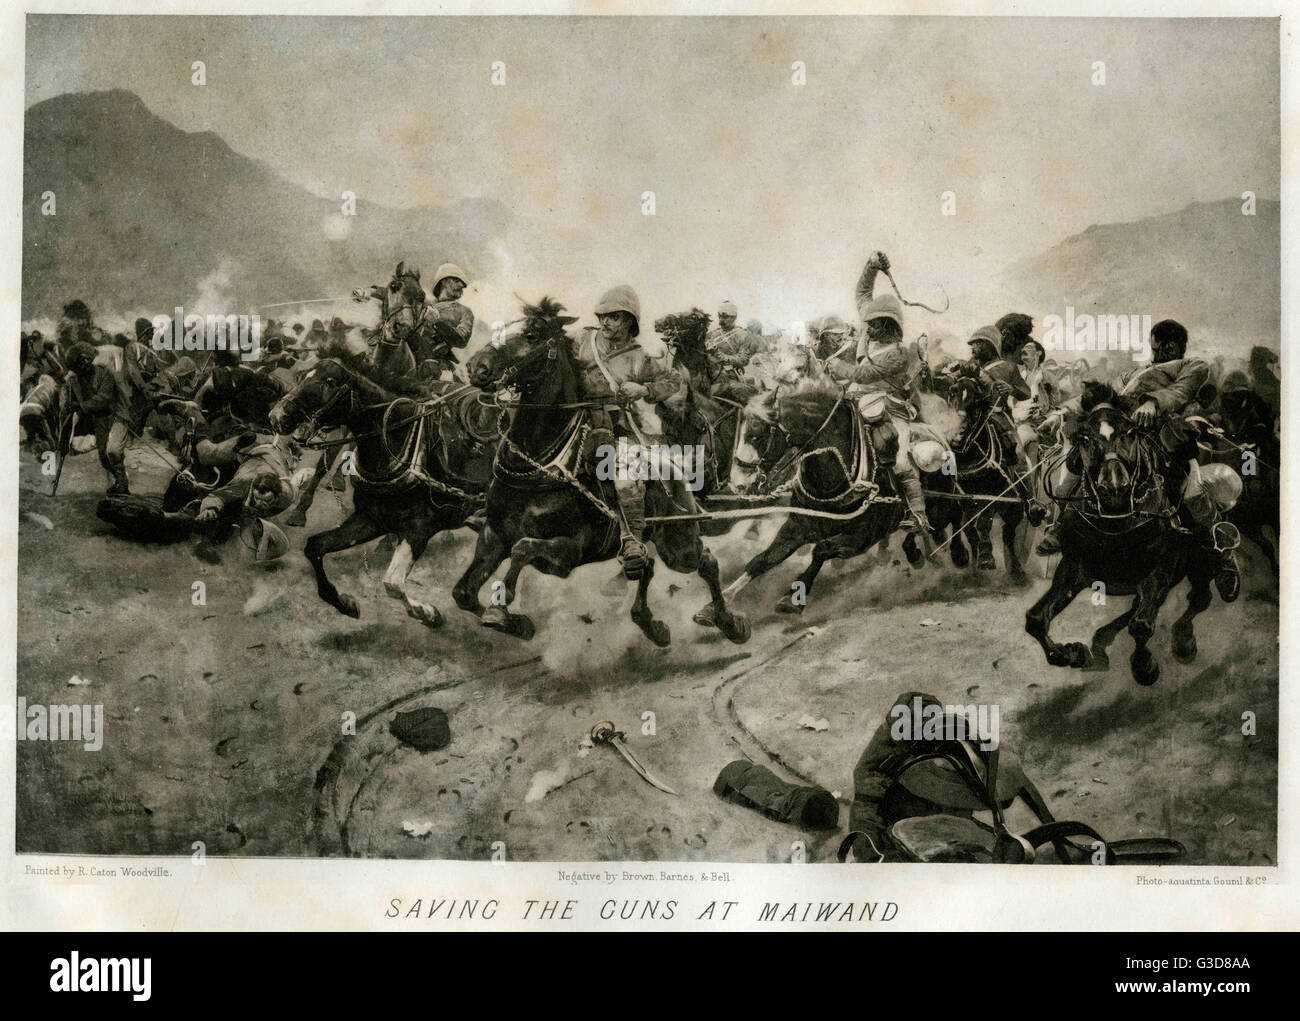 Pistole a Waiwand 1880 Foto Stock